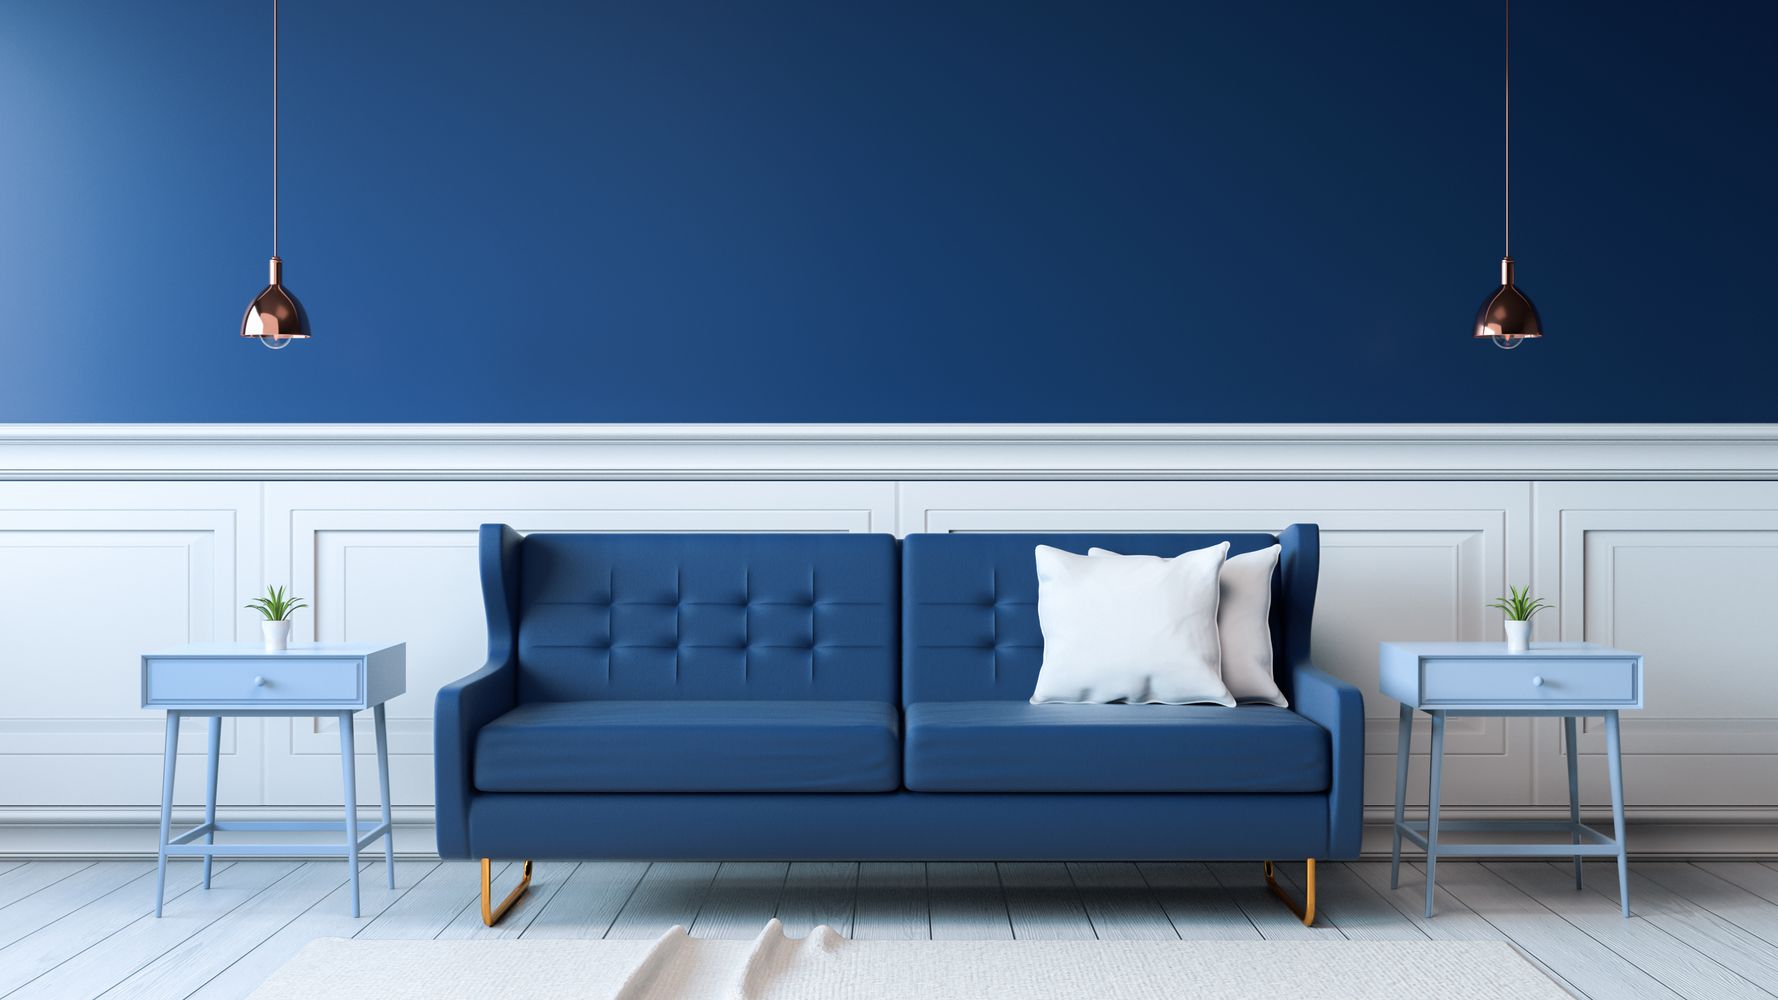 Xu hướng nội thất đơn sắc với gam màu xanh chủ đạo | Nguồn Internet